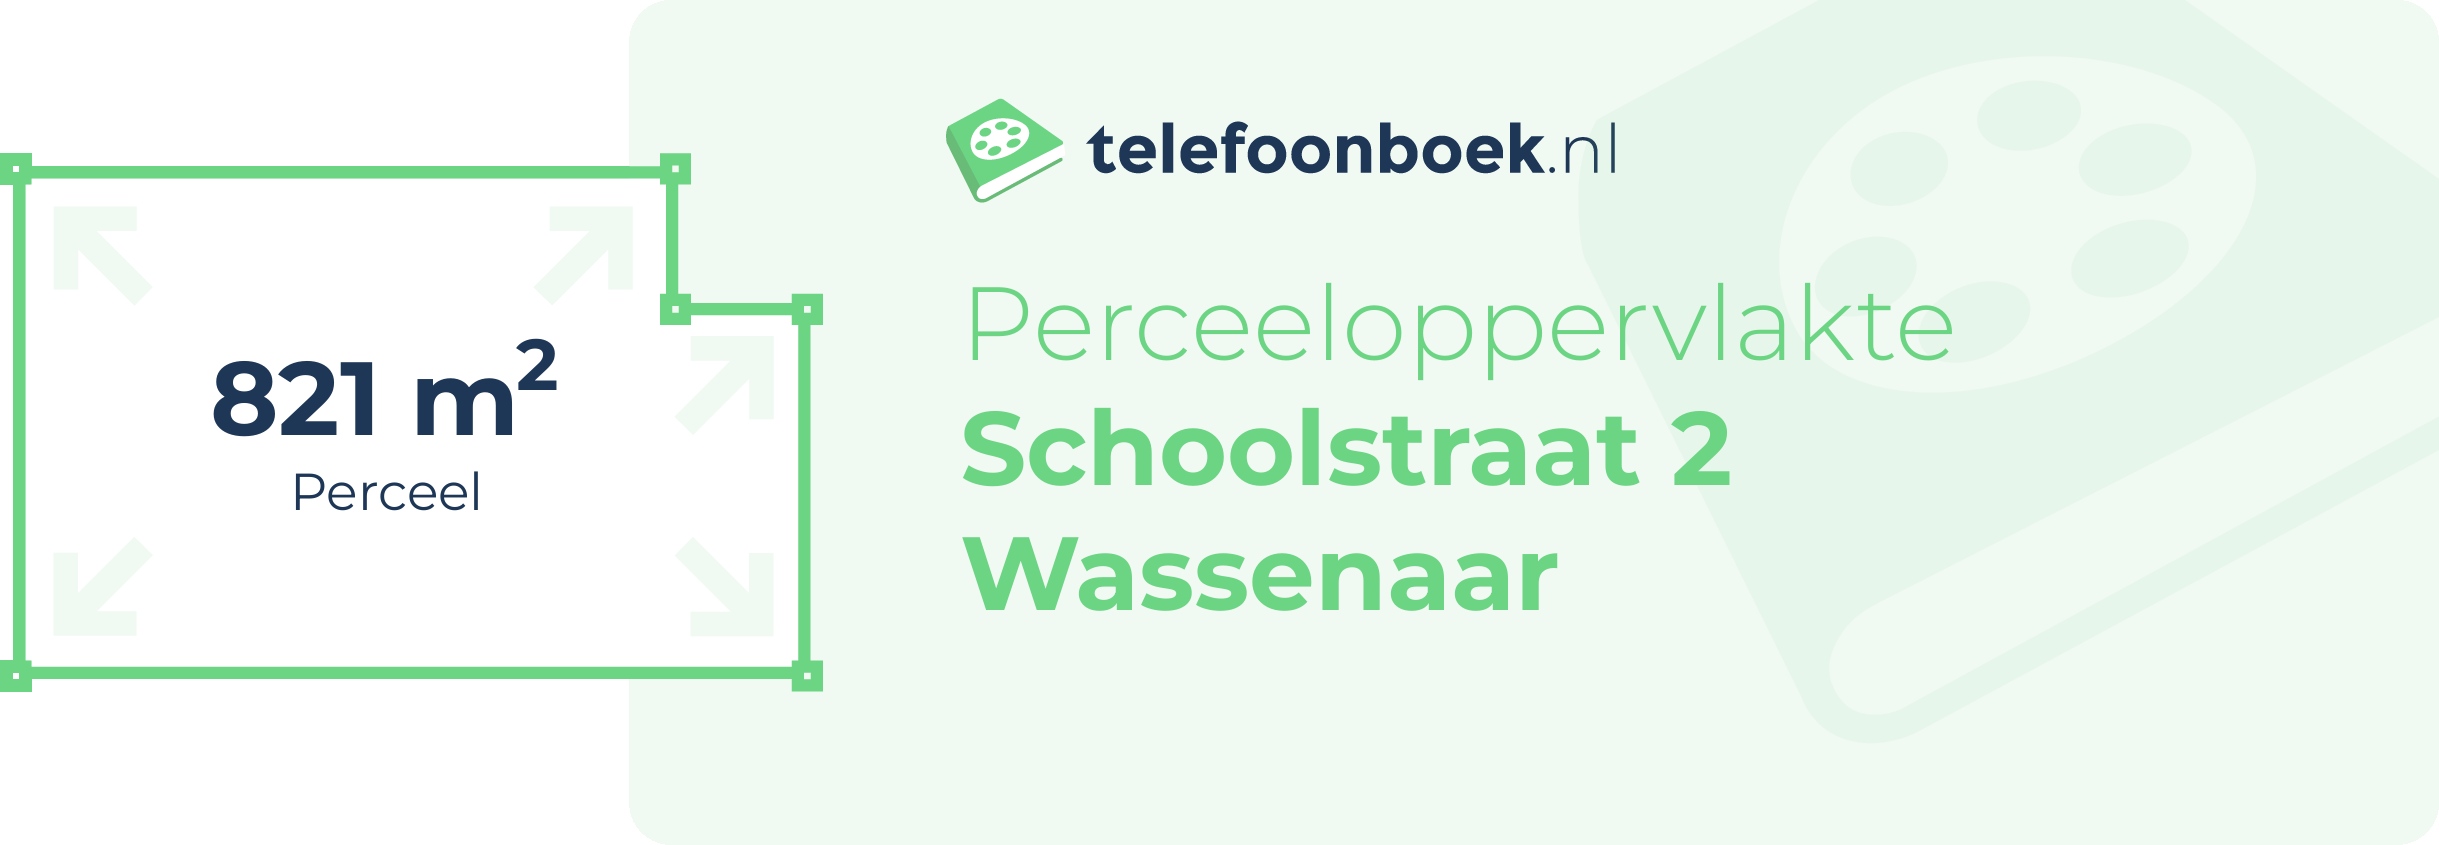 Perceeloppervlakte Schoolstraat 2 Wassenaar